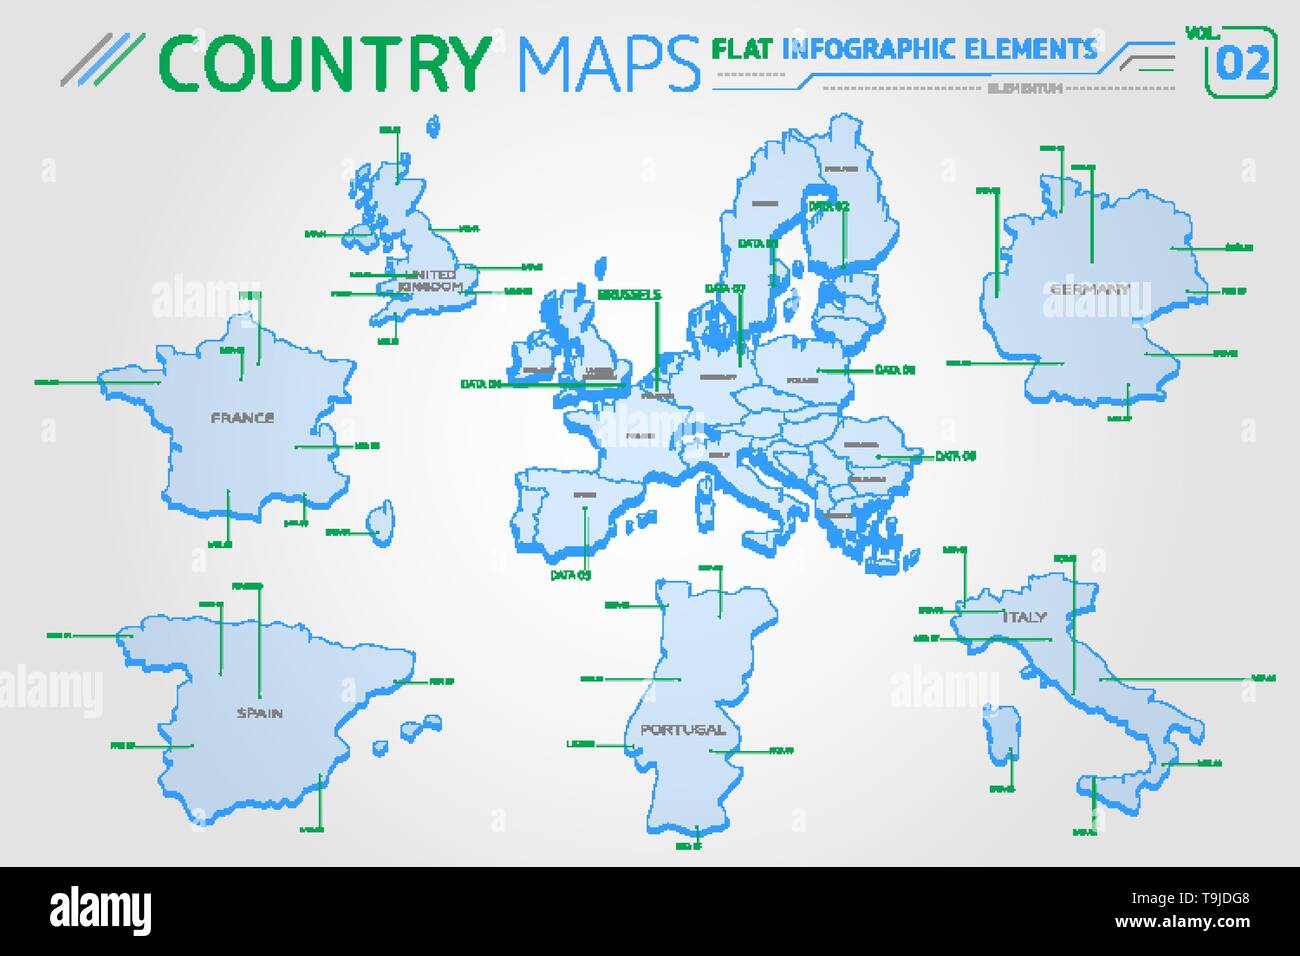 Europa, Reino Unido, Francia, España, Portugal, Italia y Alemania los mapas de vectores. Ilustración del Vector